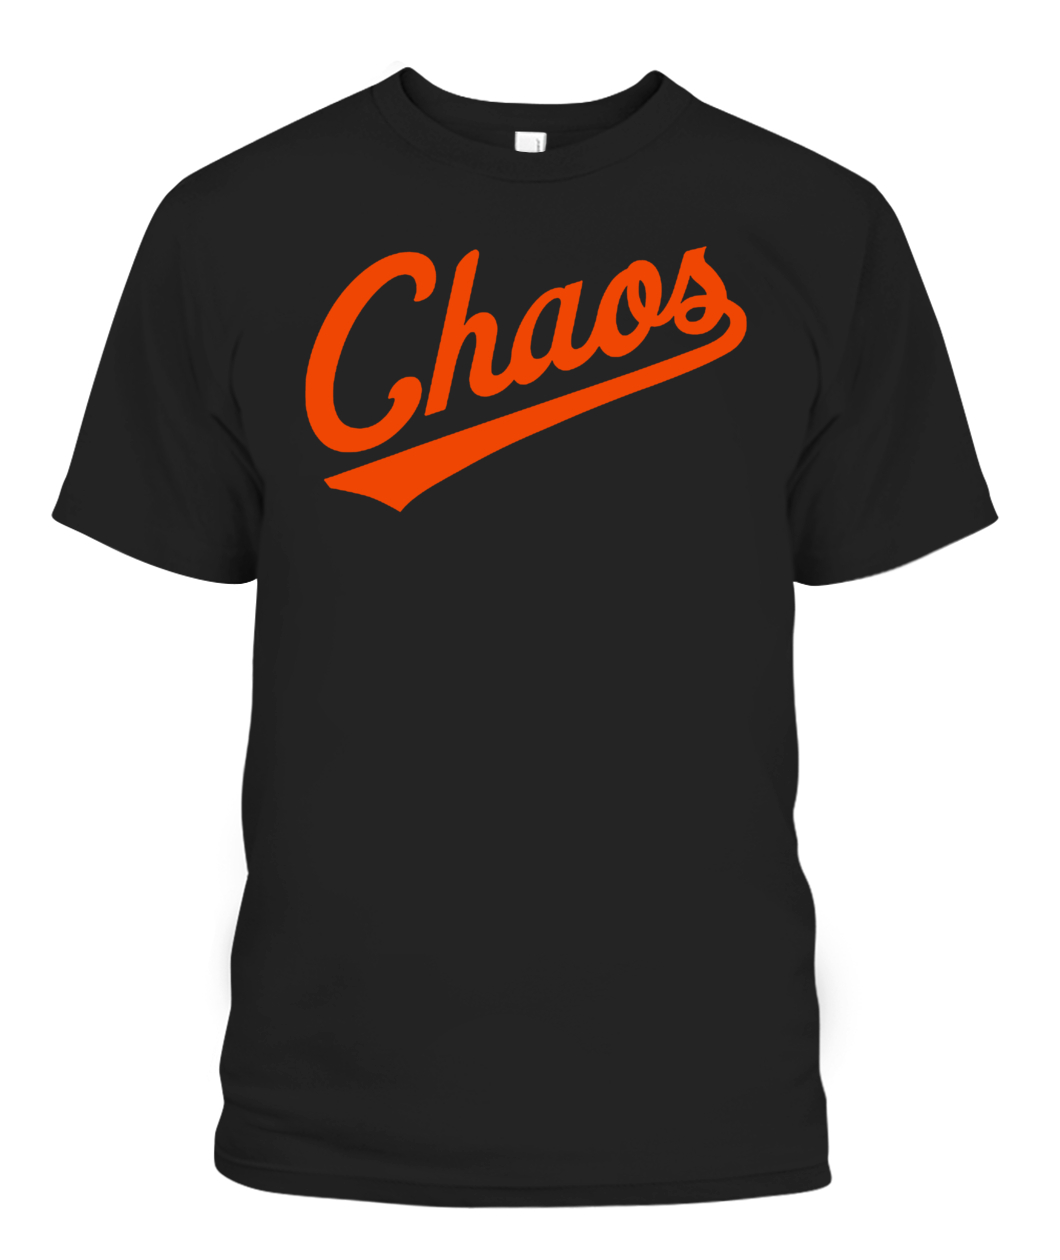 Top baltimore Orioles Chaos Comin' 2022 Shirt